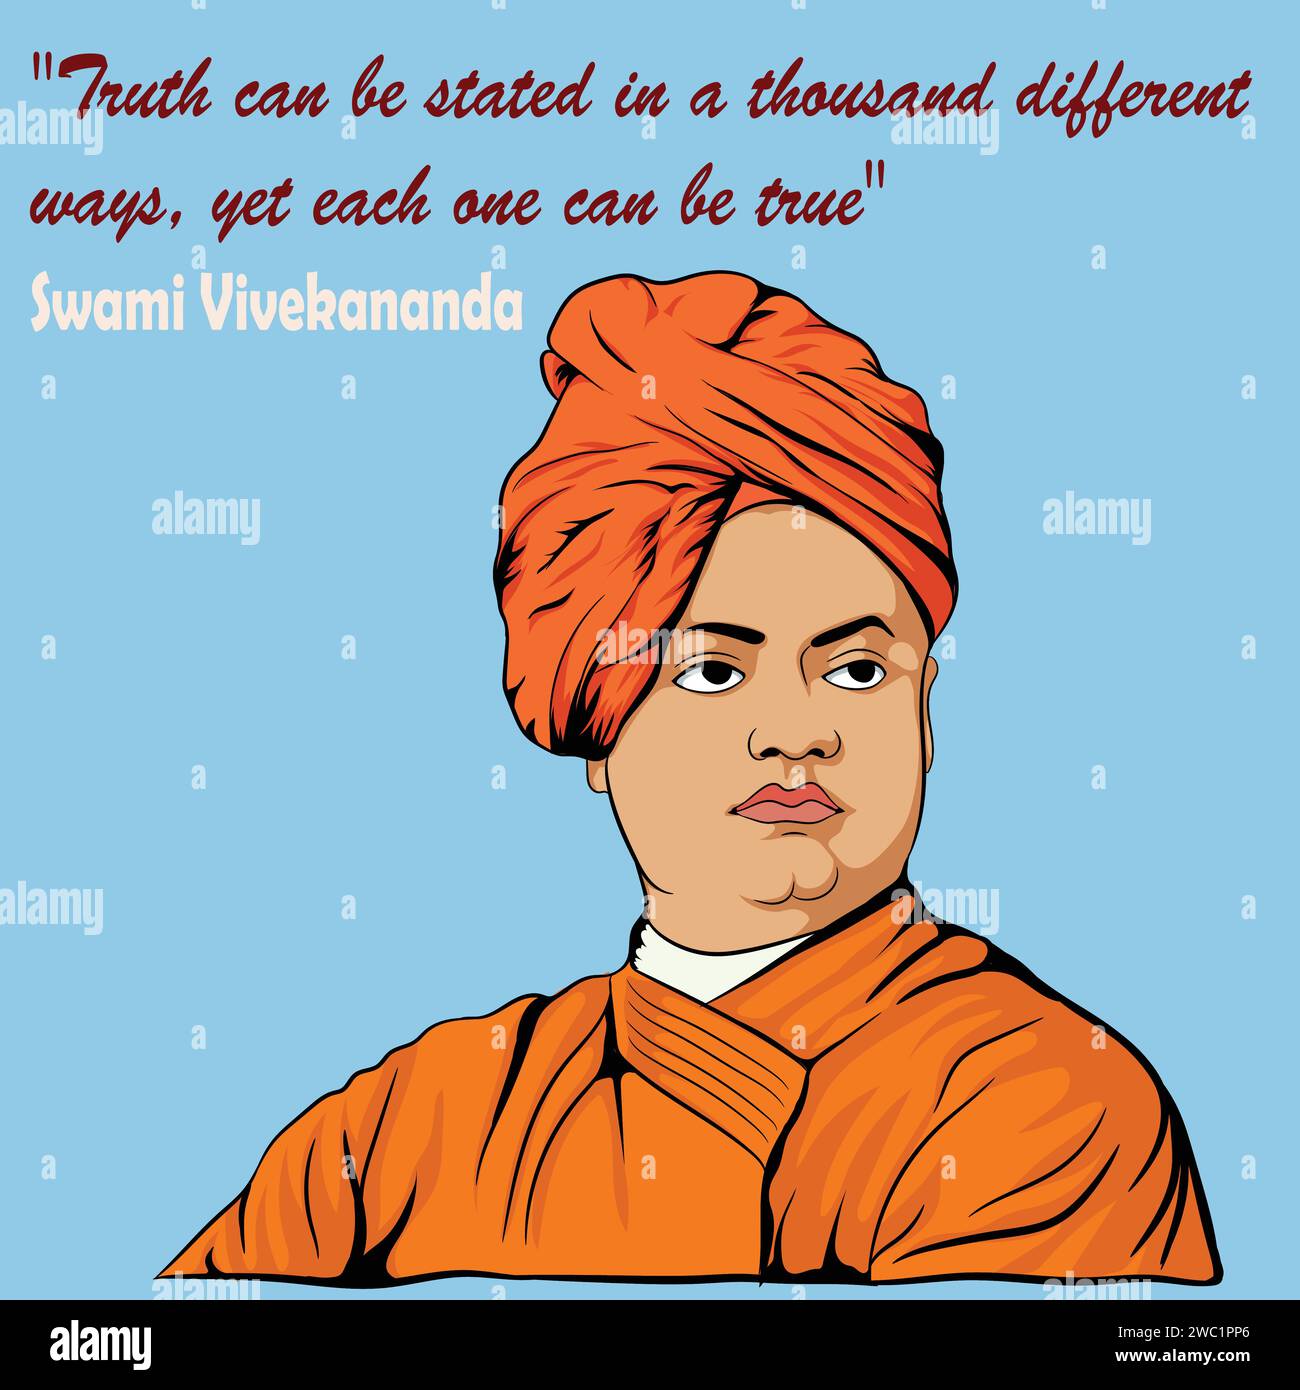 Citation inspirante et motivante 'la vérité peut être énoncée de mille façons différentes, mais chacune peut être vraie.' - Swami Vivekananda Illustration de Vecteur